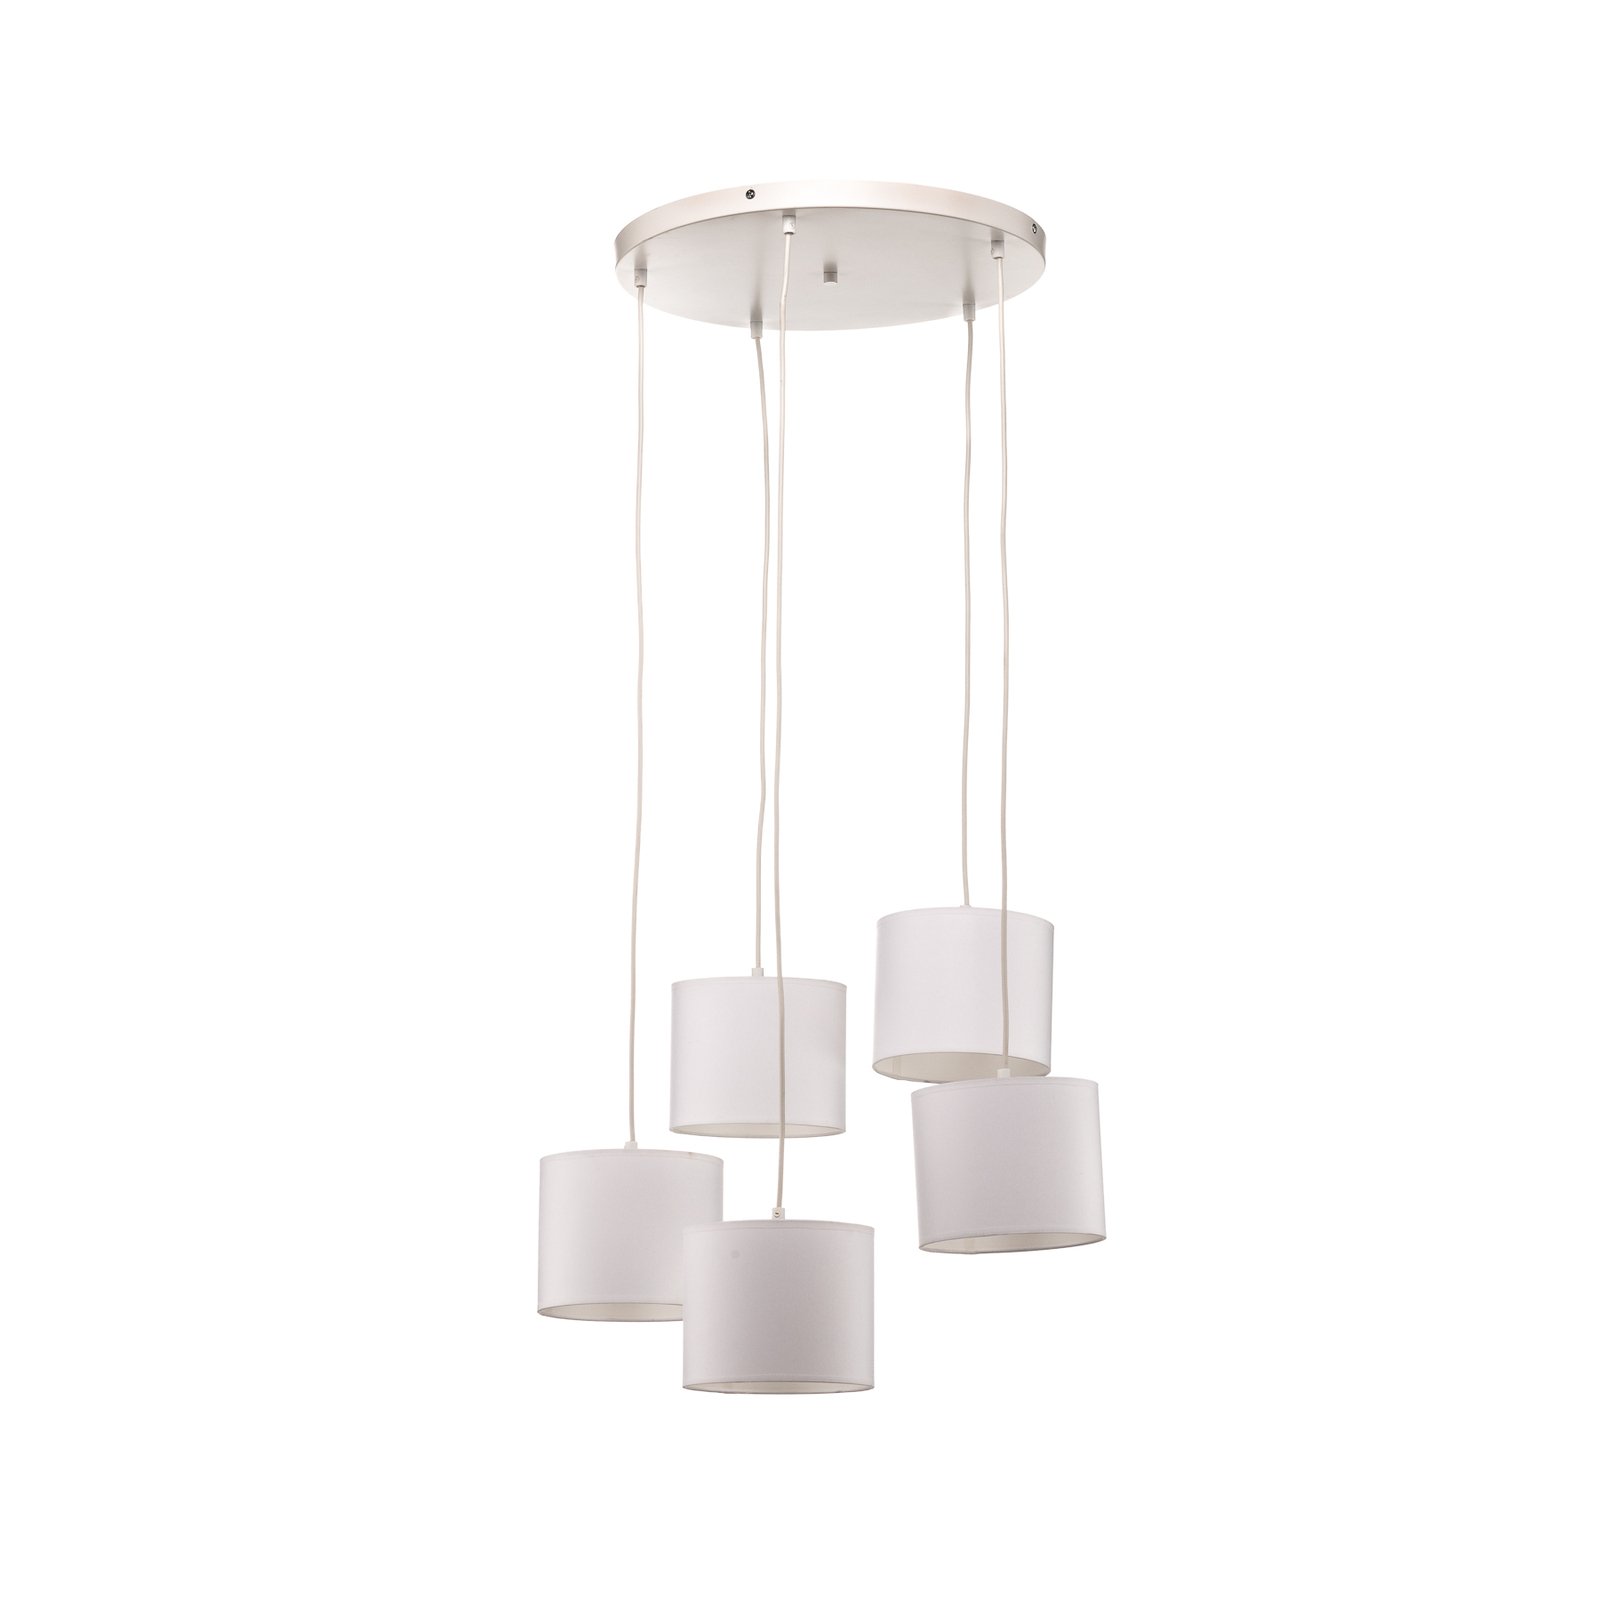 Soho pendant light, cylindrical round 5-bulb white